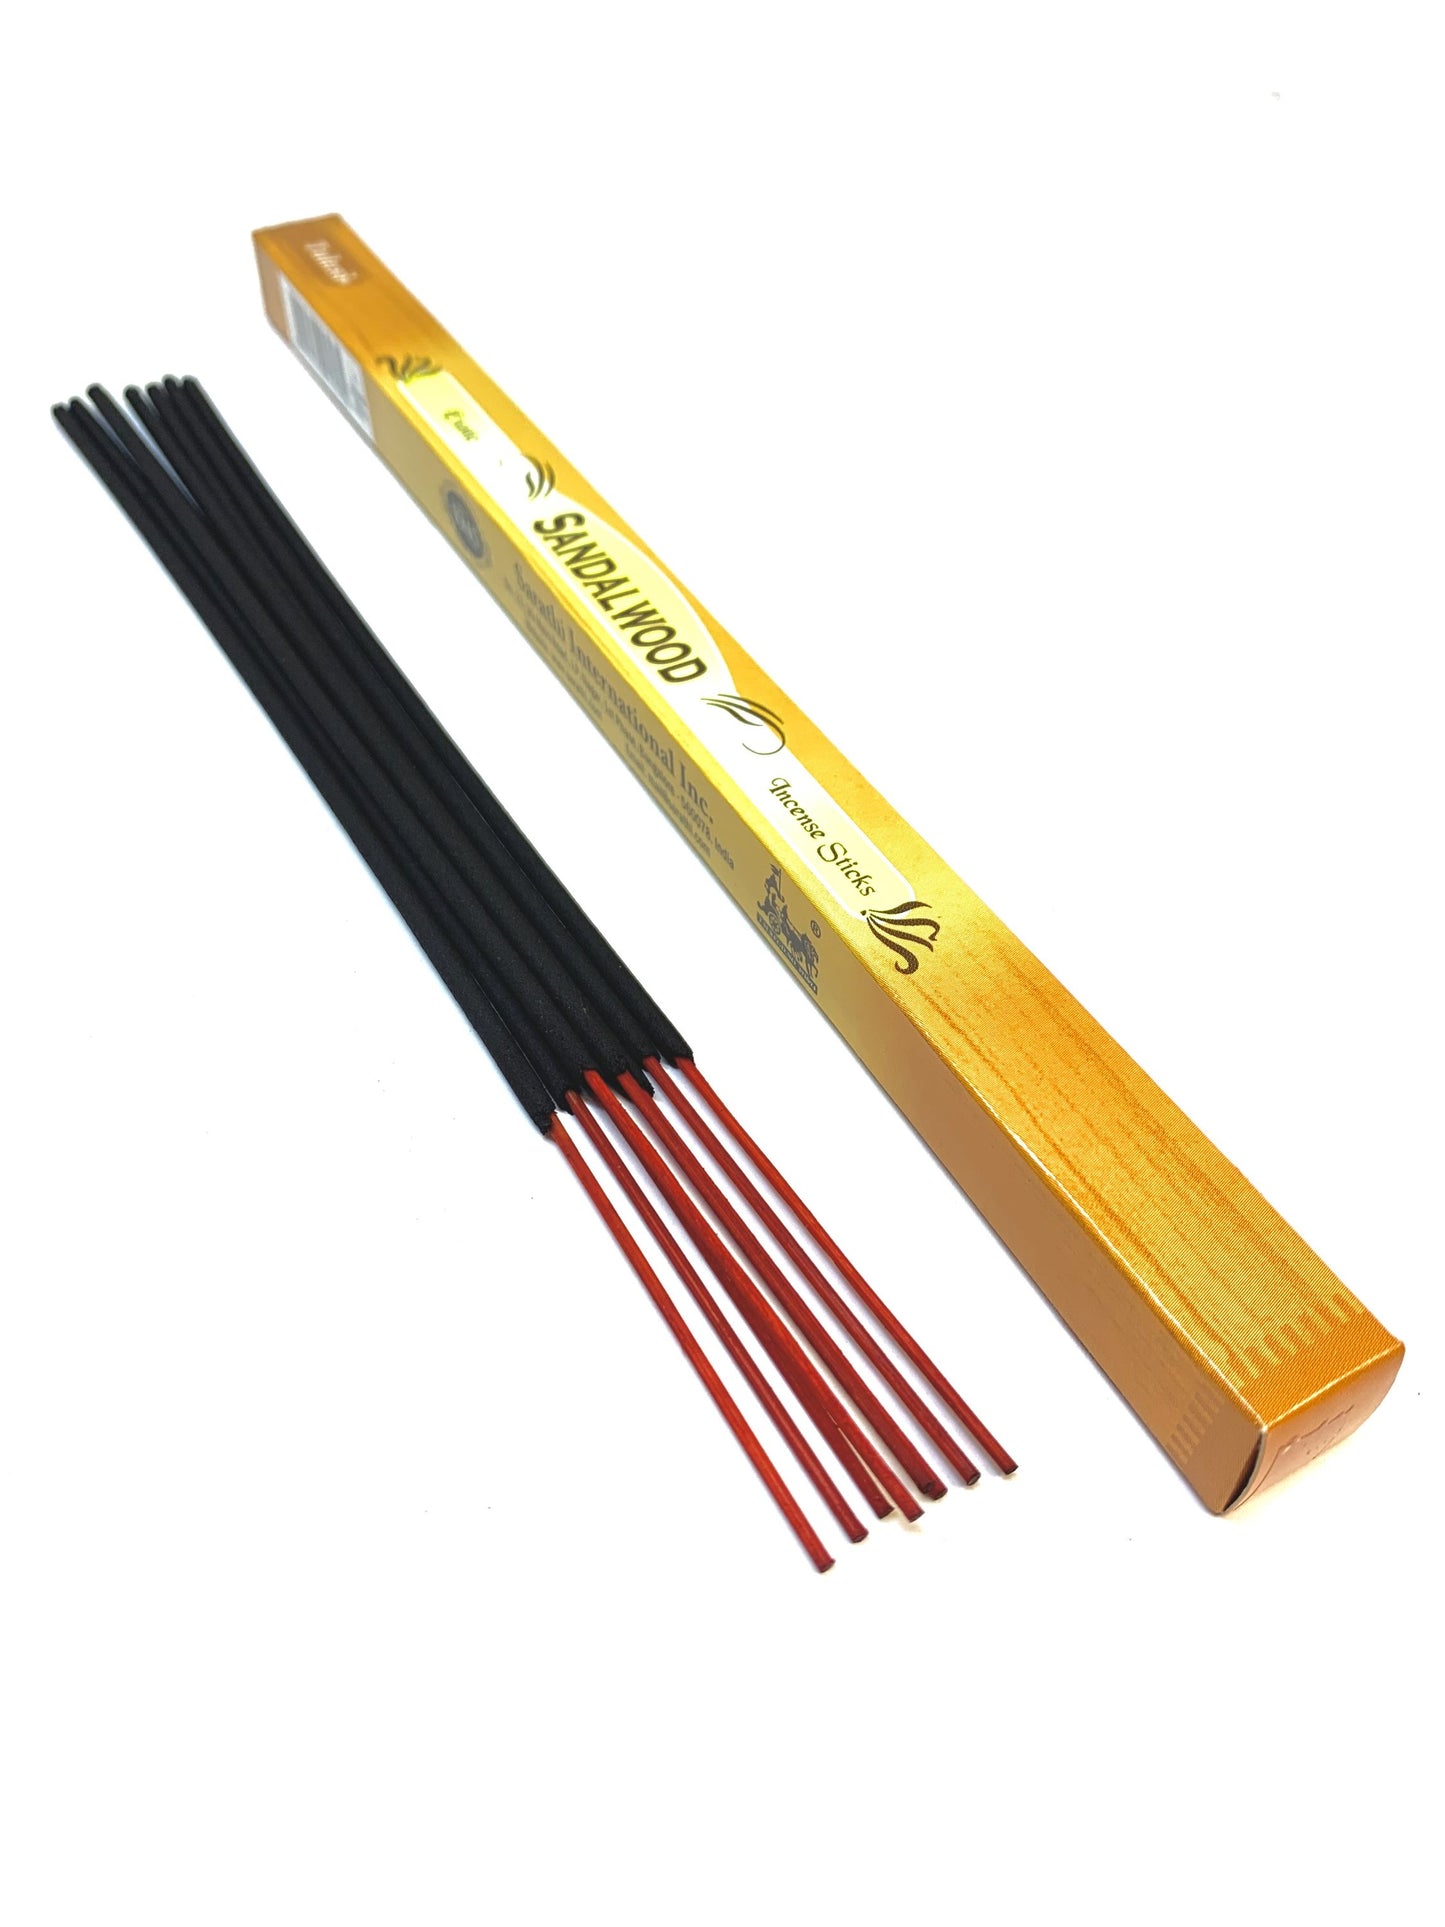 Sandalwood Incense Sticks (Pack of 8 sticks)